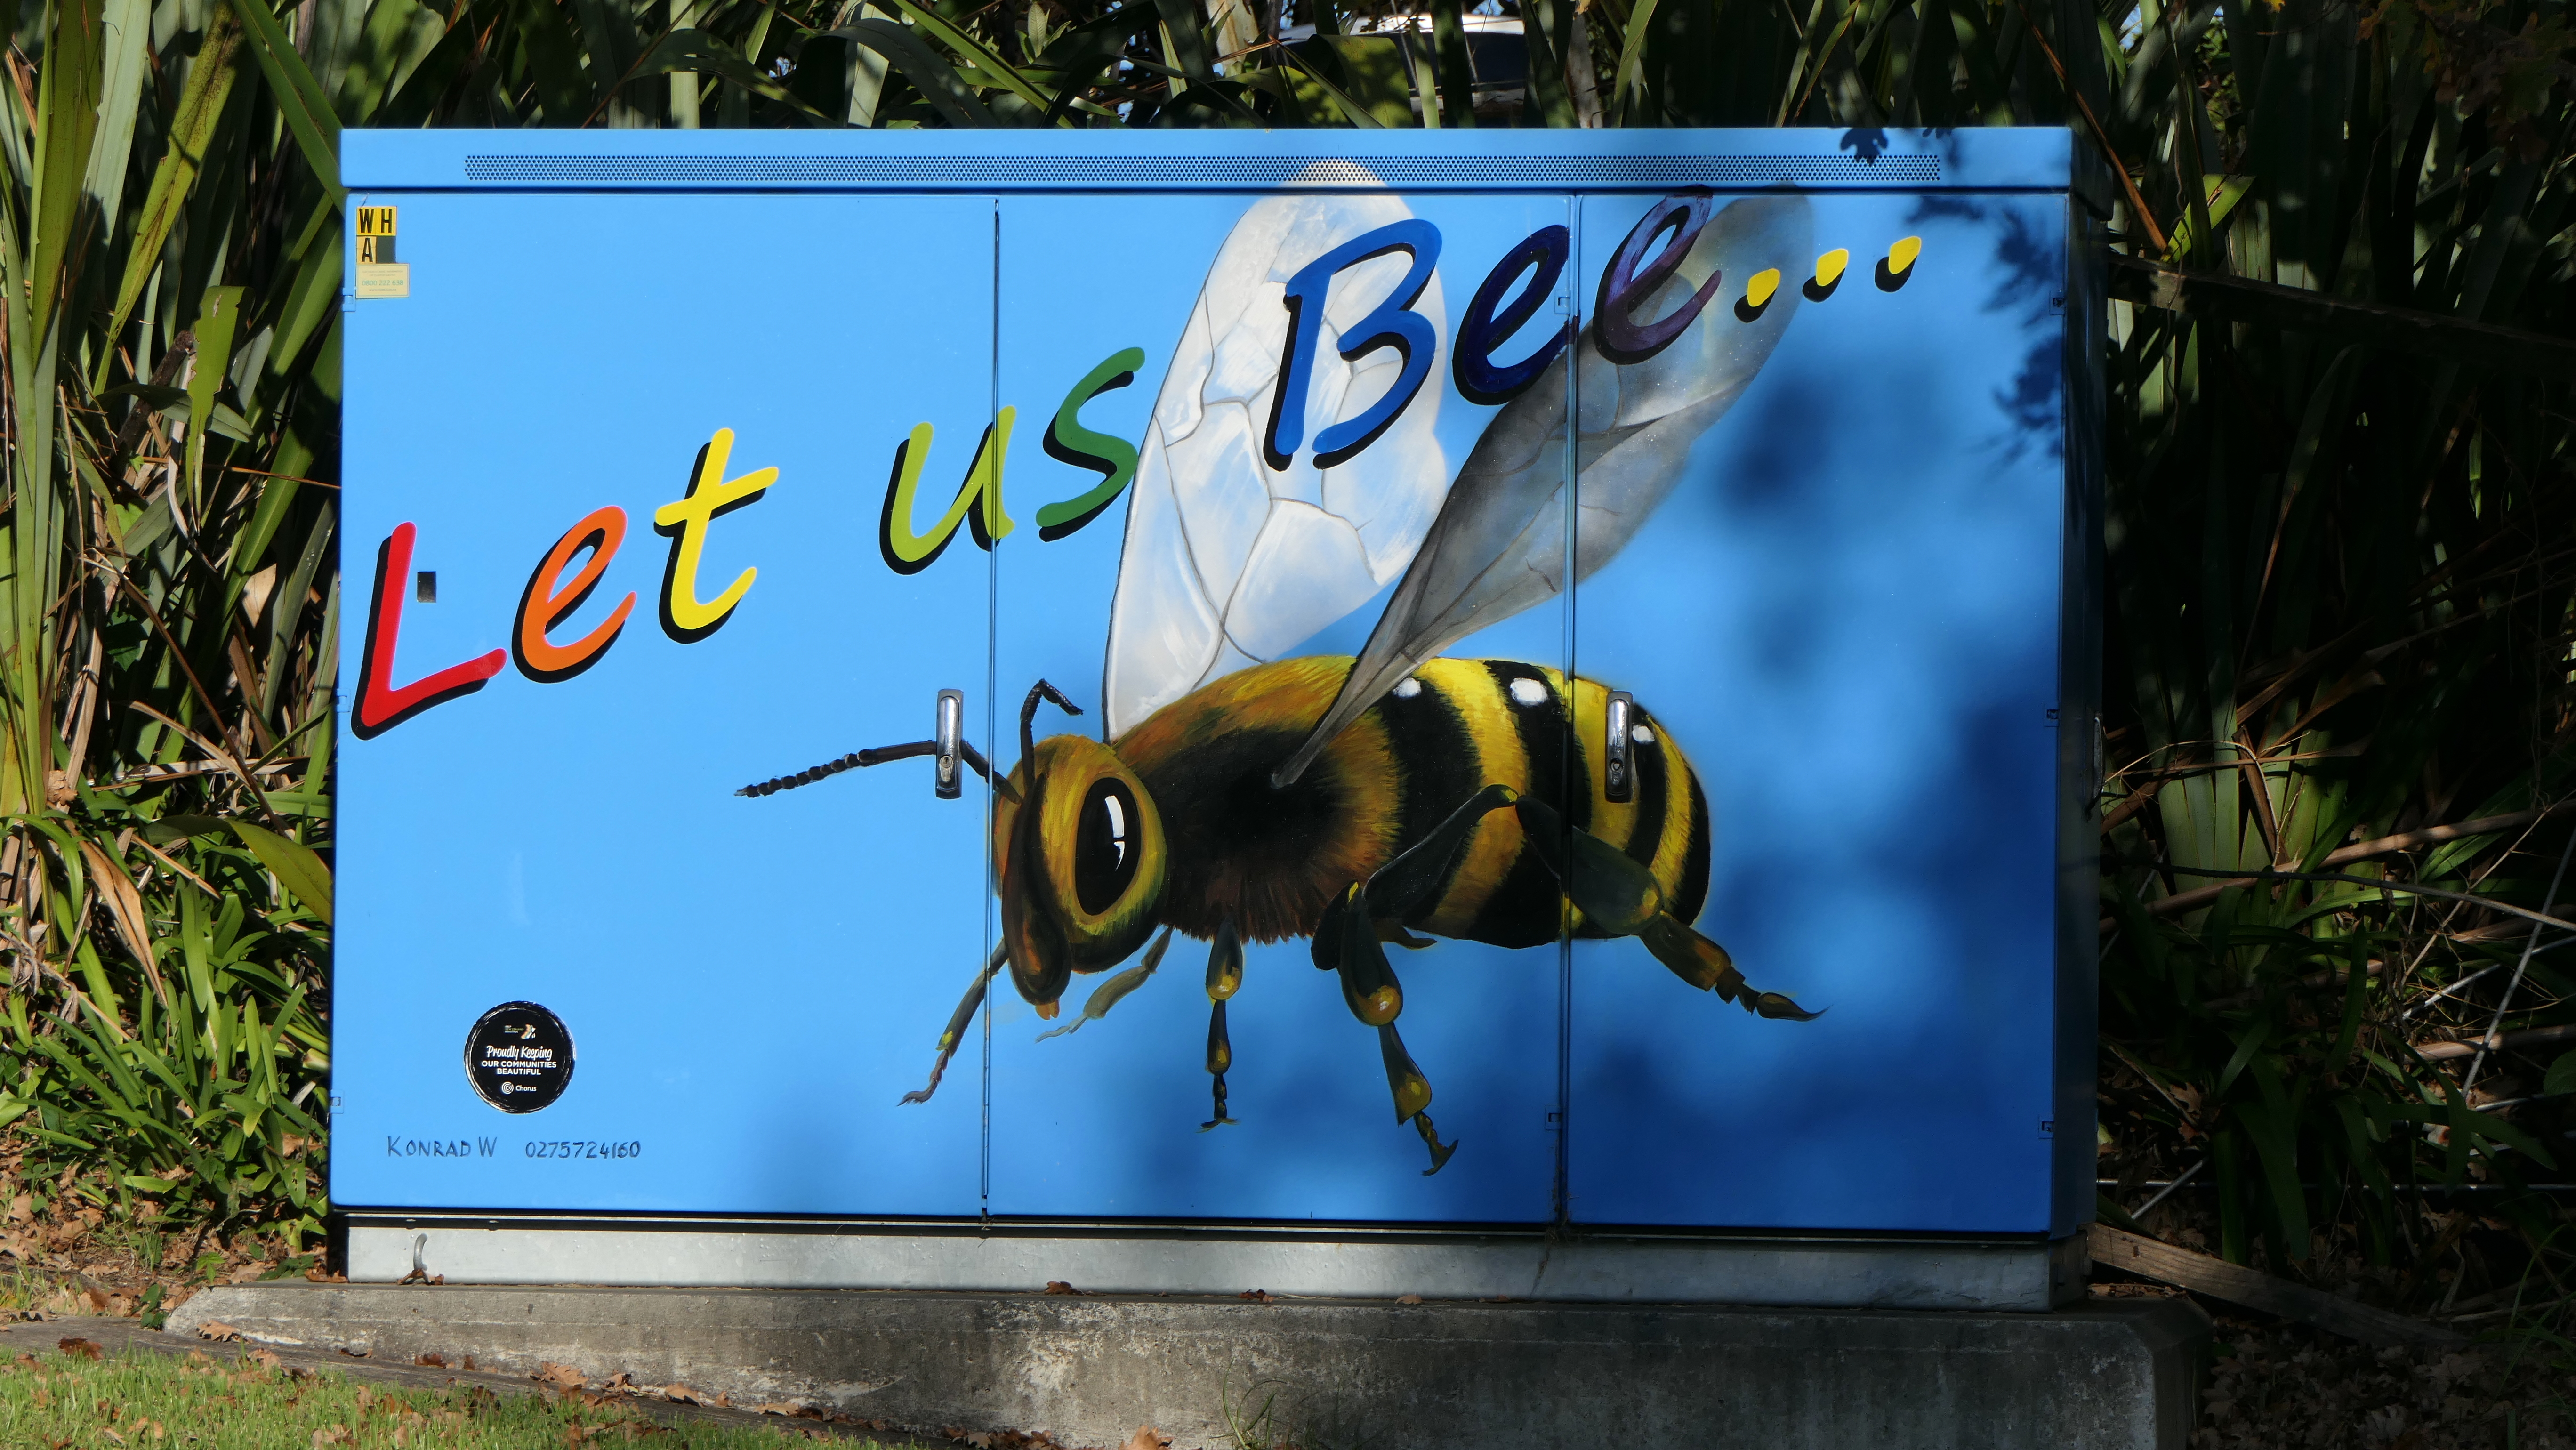 Let us Bee - Werbung für die Umwelt